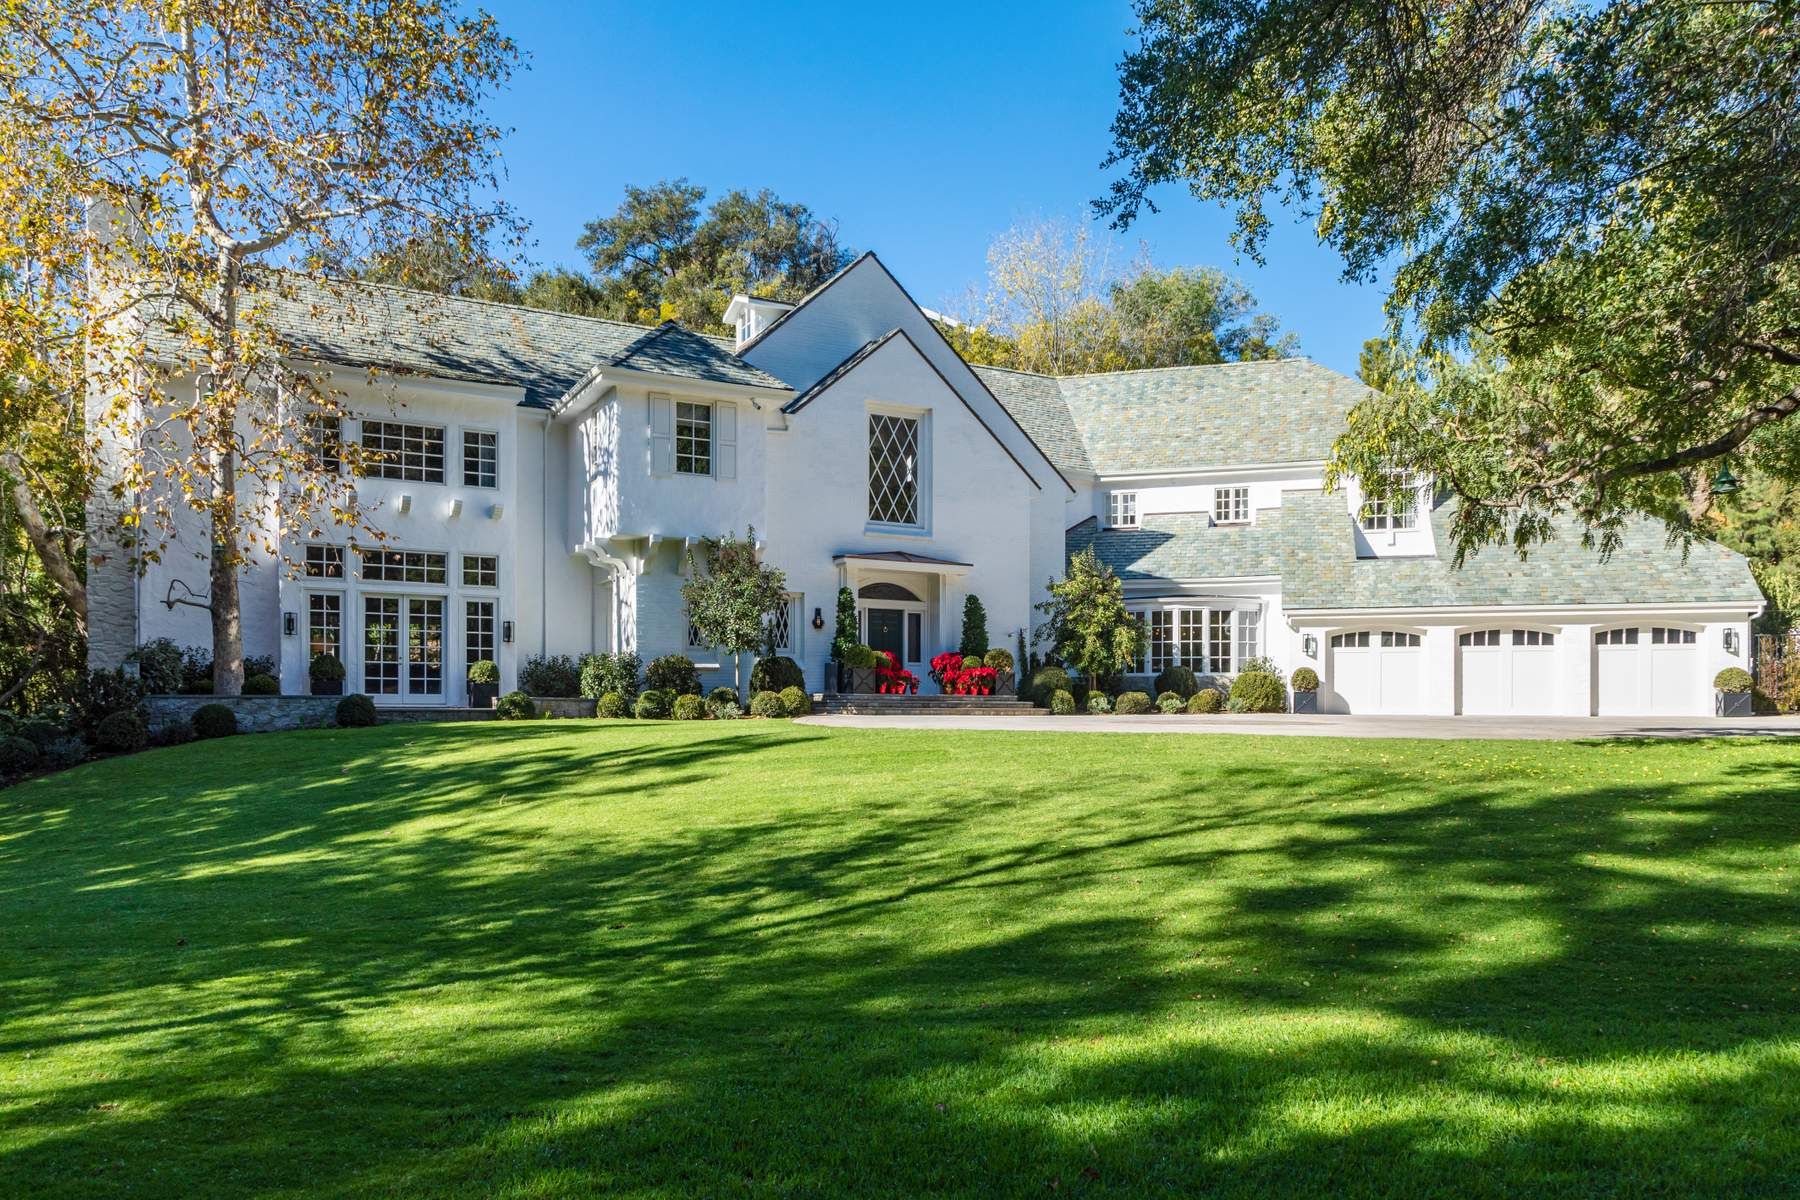 imagen 1 de Reese Witherspoon vende su casa por 25 millones de dólares…